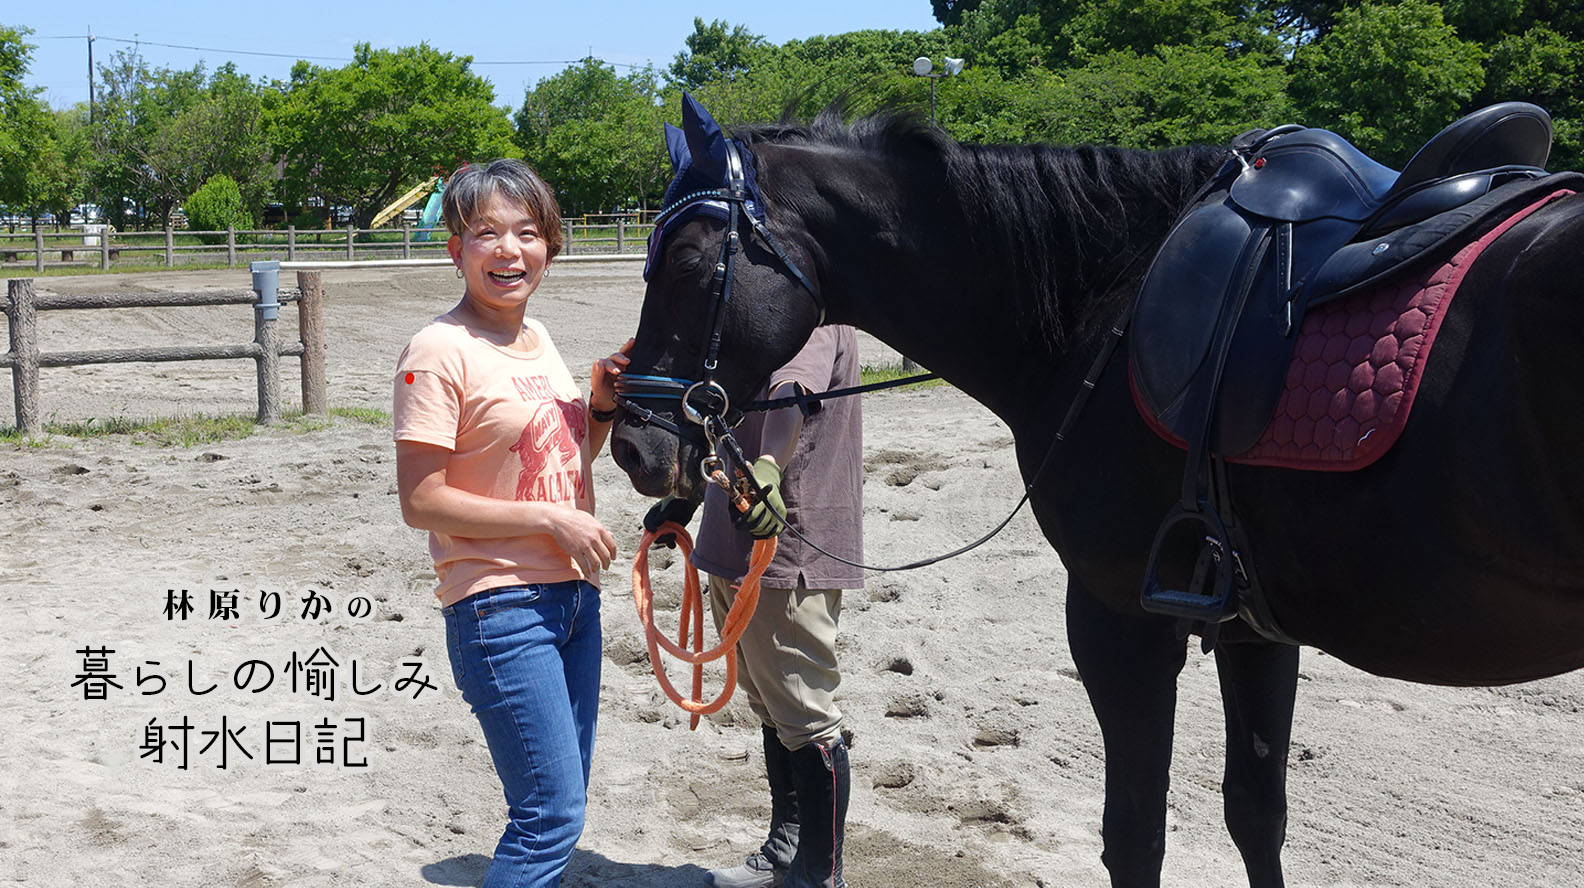 馬事公園のイベント「チャレンジ乗馬」で、生まれて初めての乗馬体験！